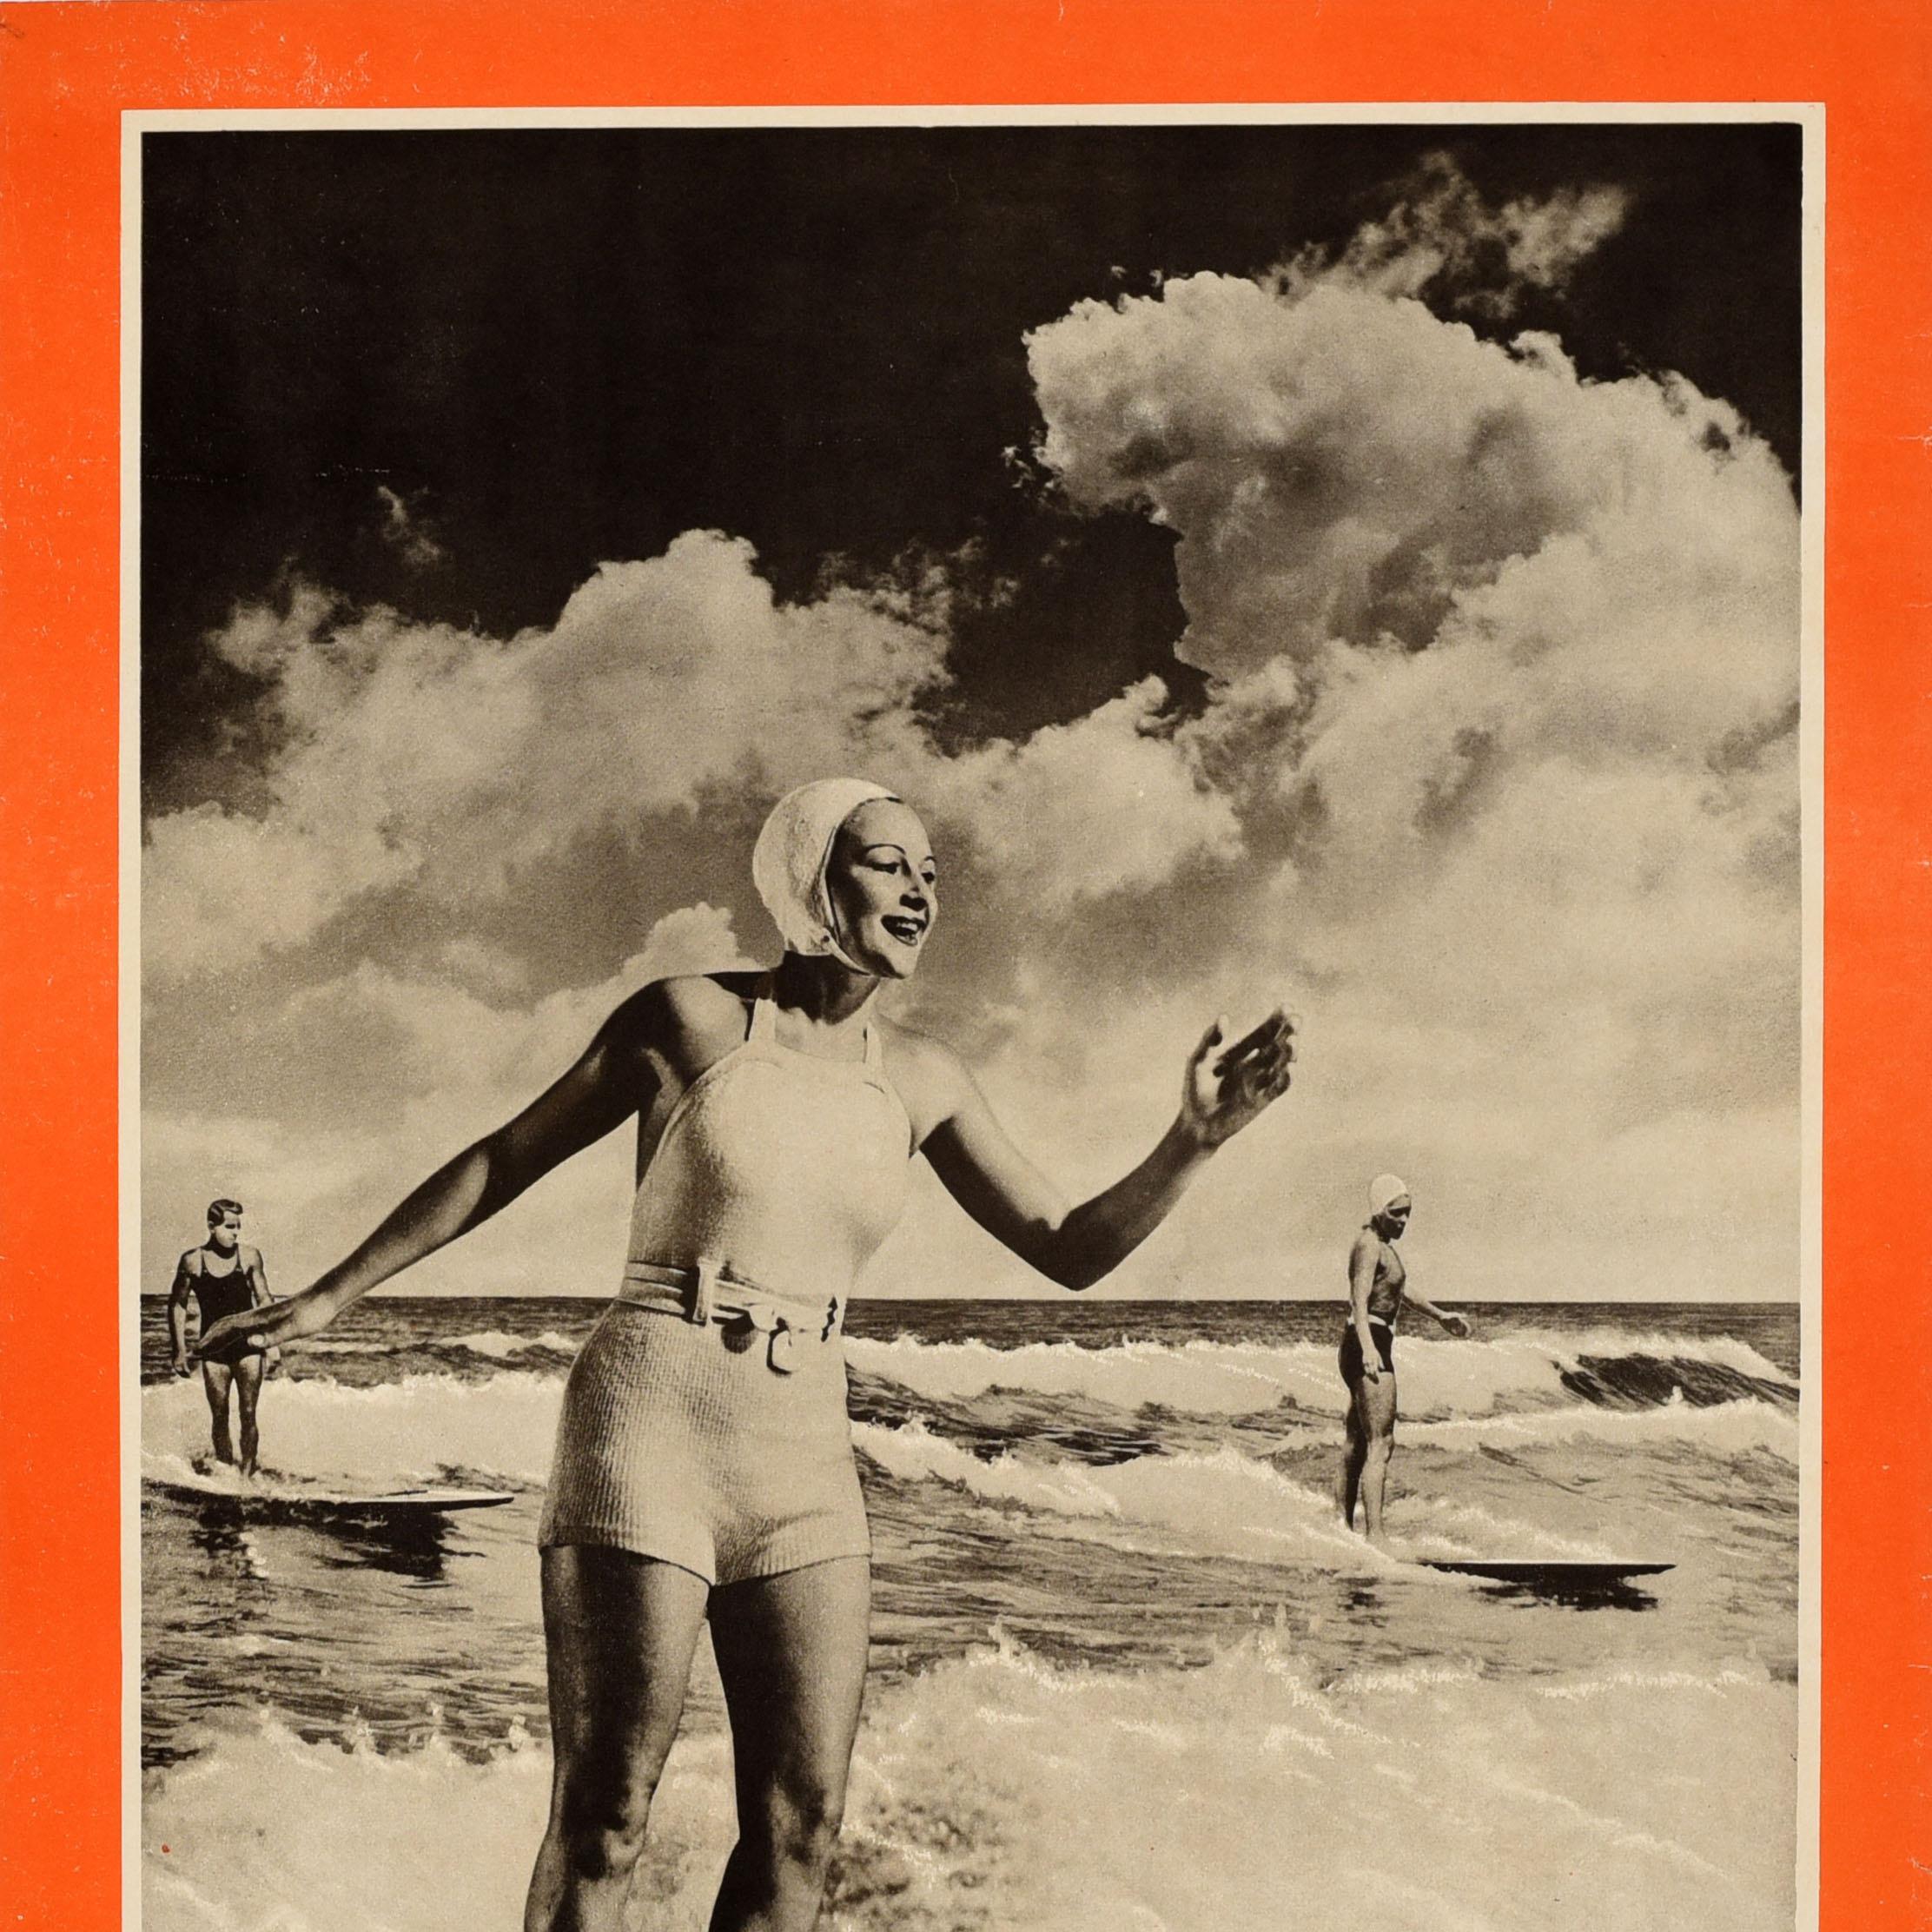 Original Vintage Water Sport Travel Poster Surfing Australia Lady Surfer Design - Orange Print by Unknown